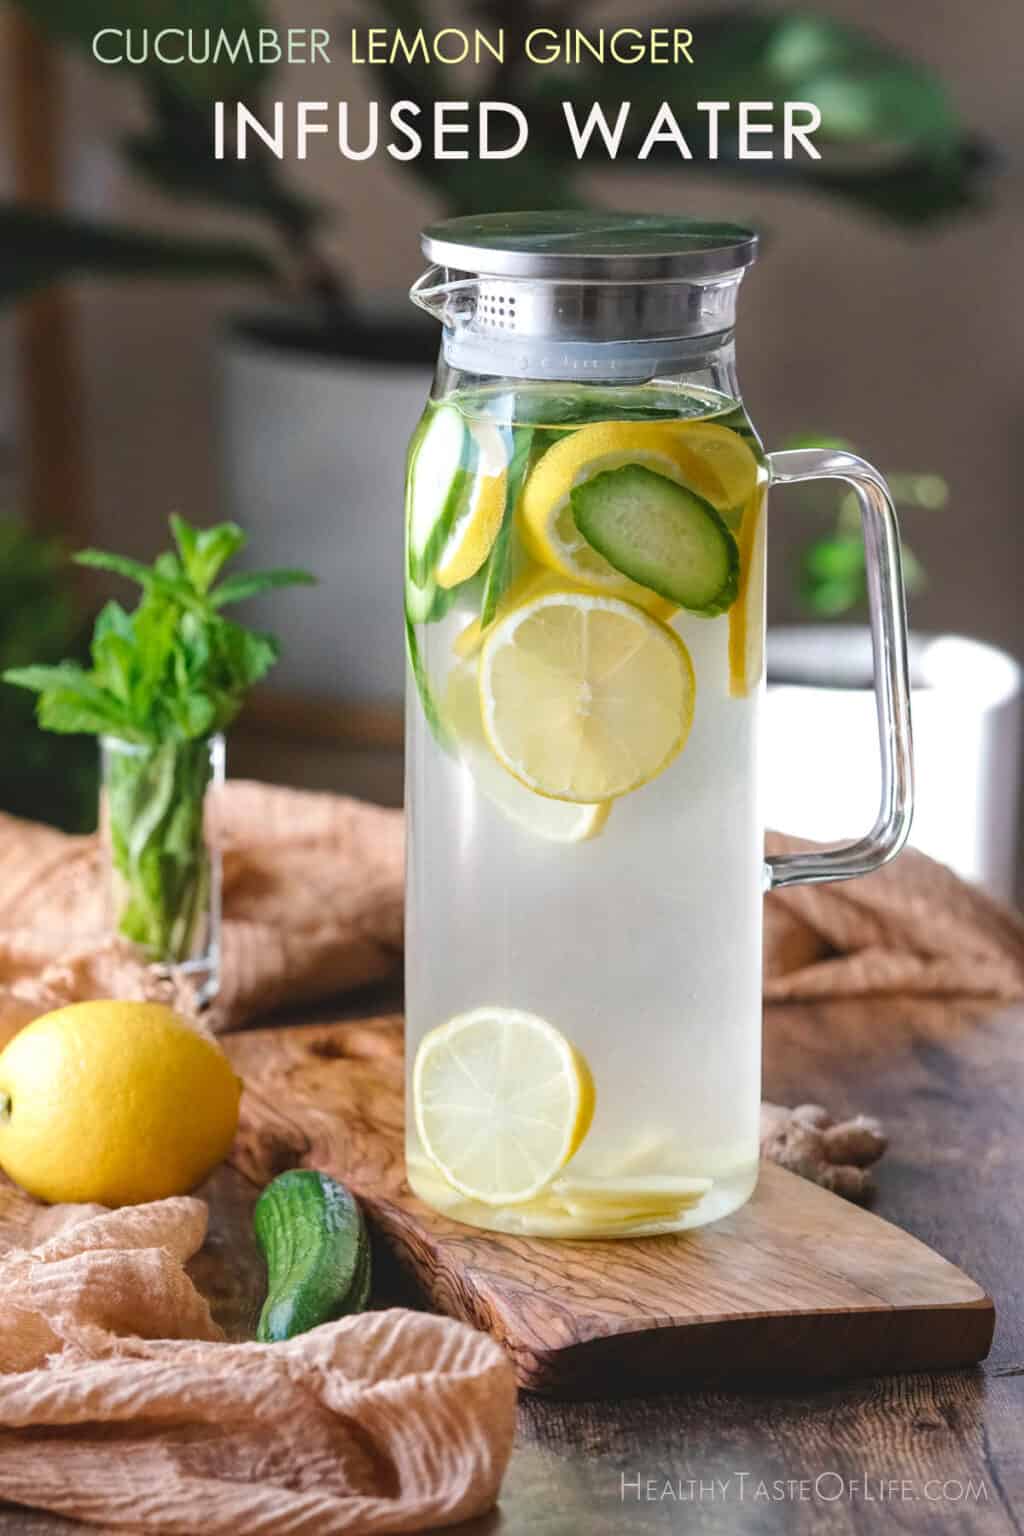 Cucumber Lemon Ginger Water Benefits + Recipe